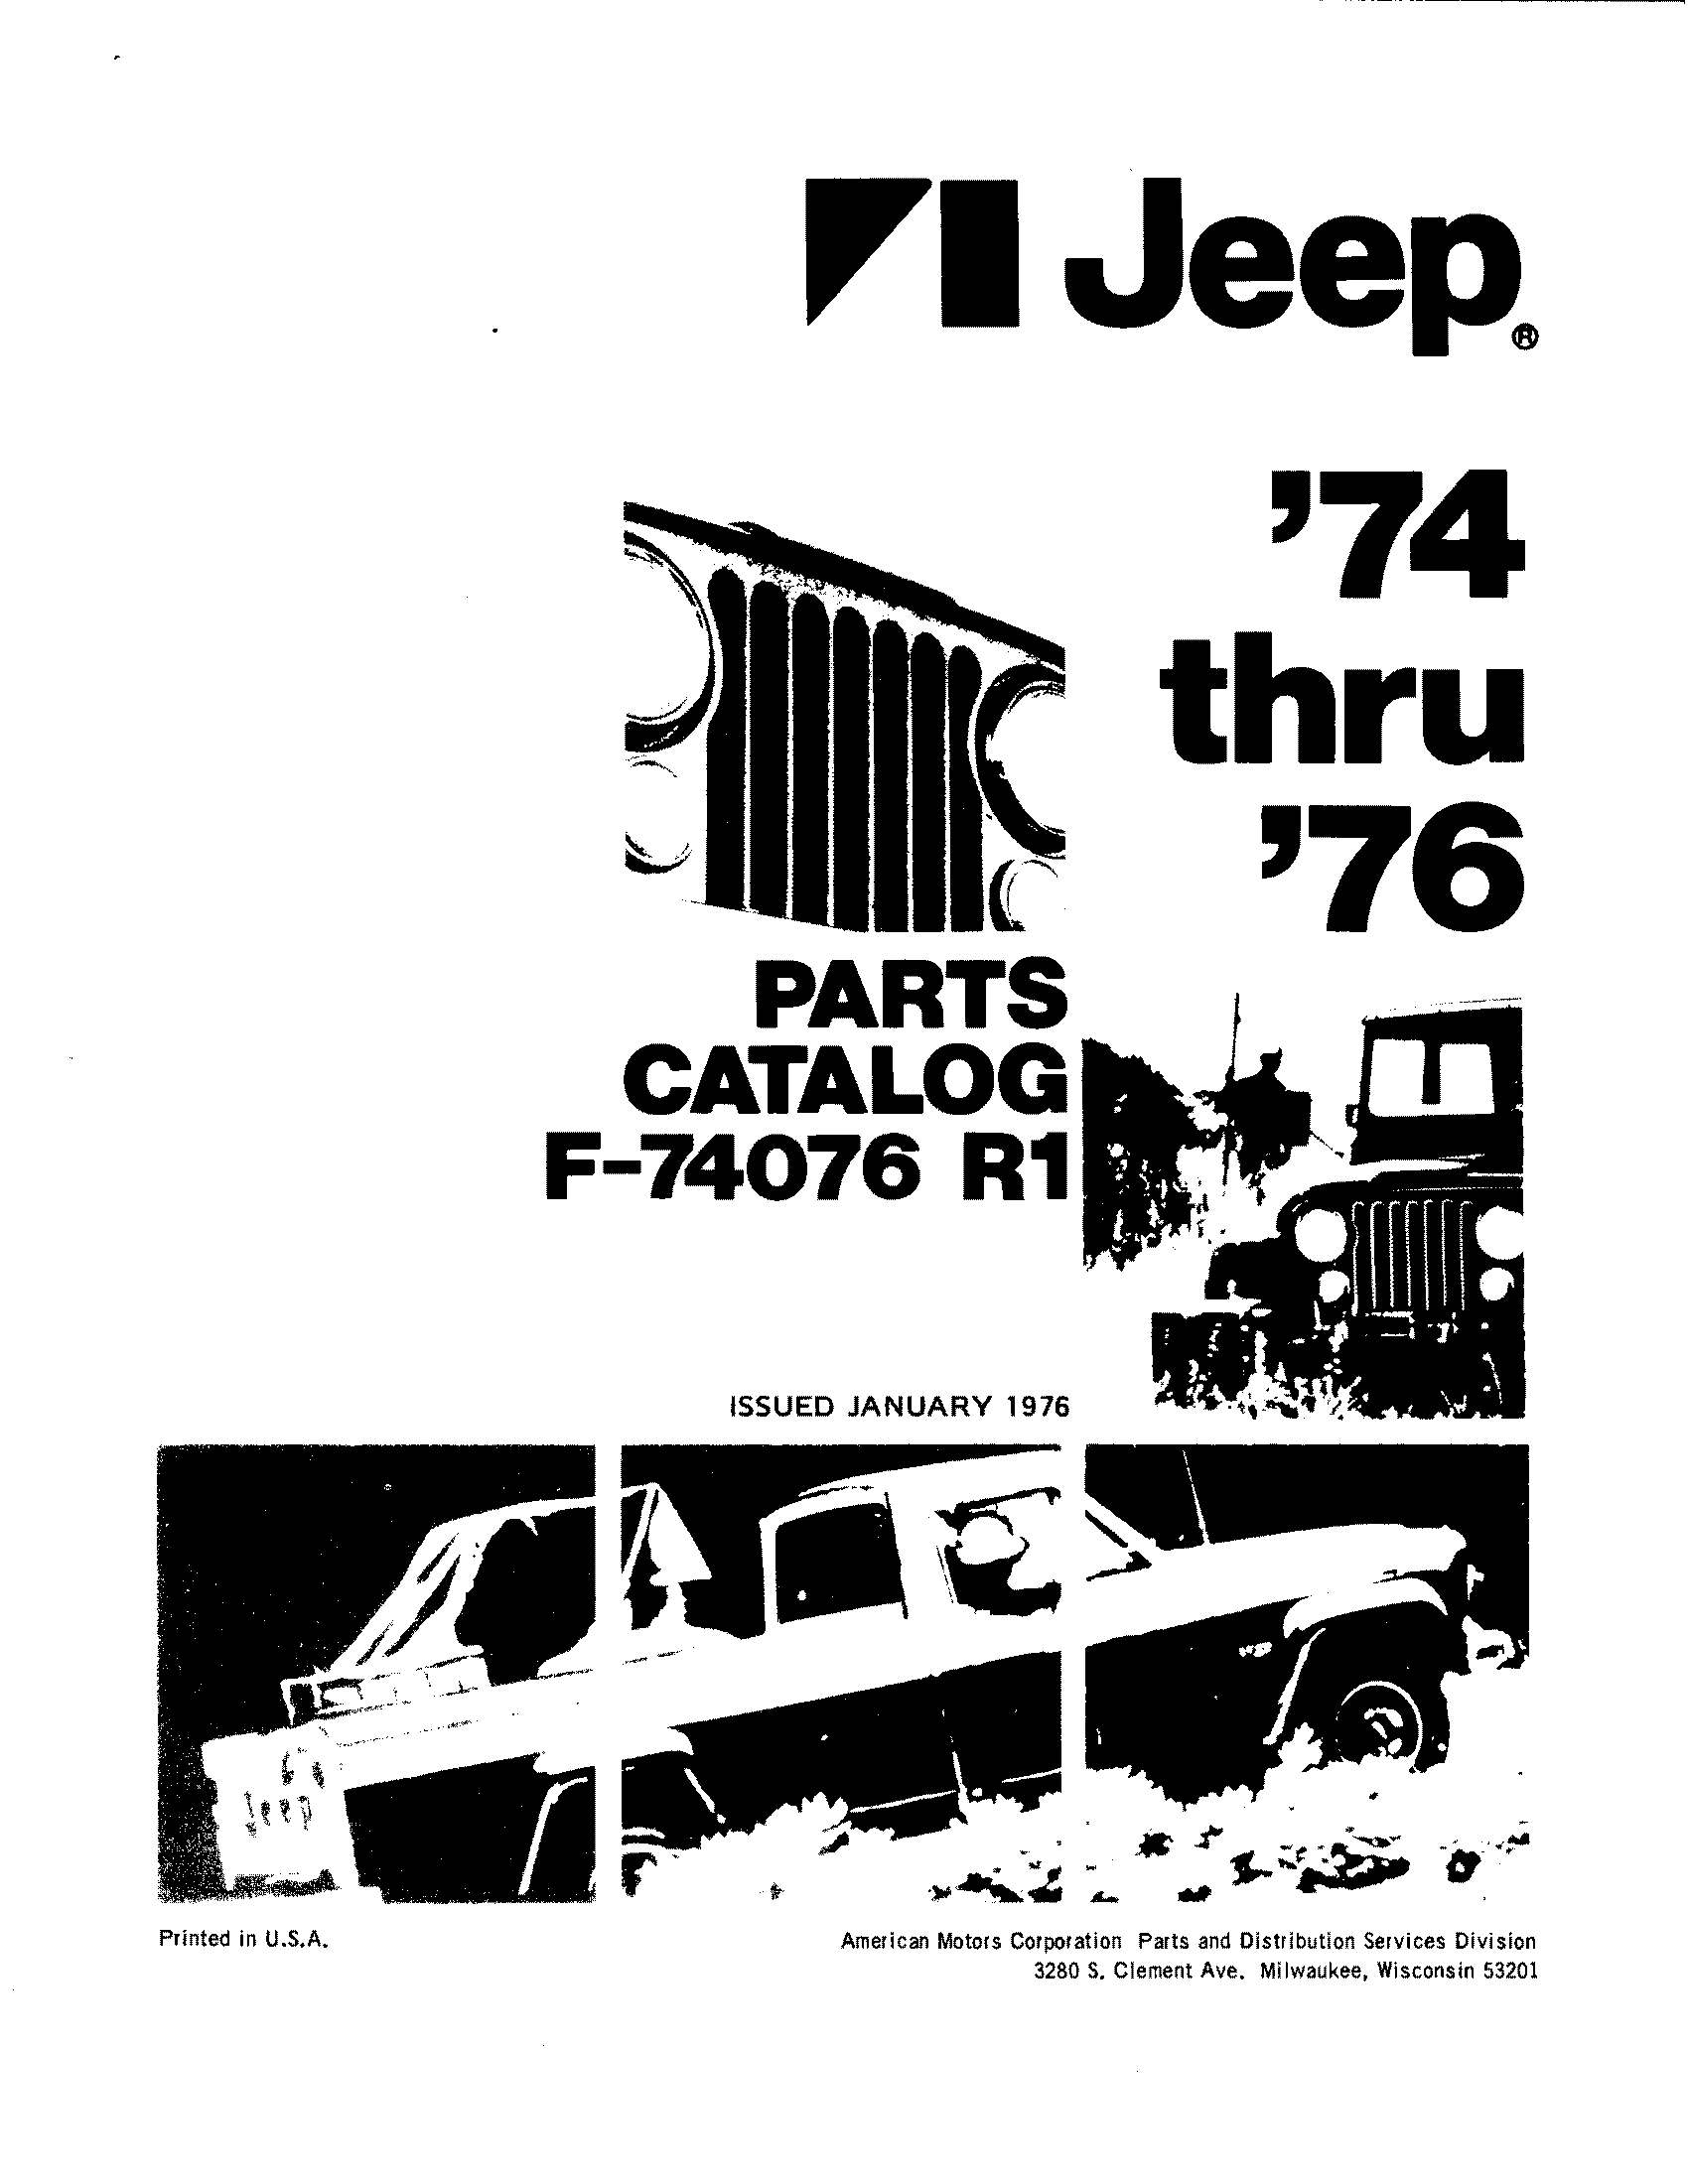 Parts Catalog F-74076 R1 January 1976